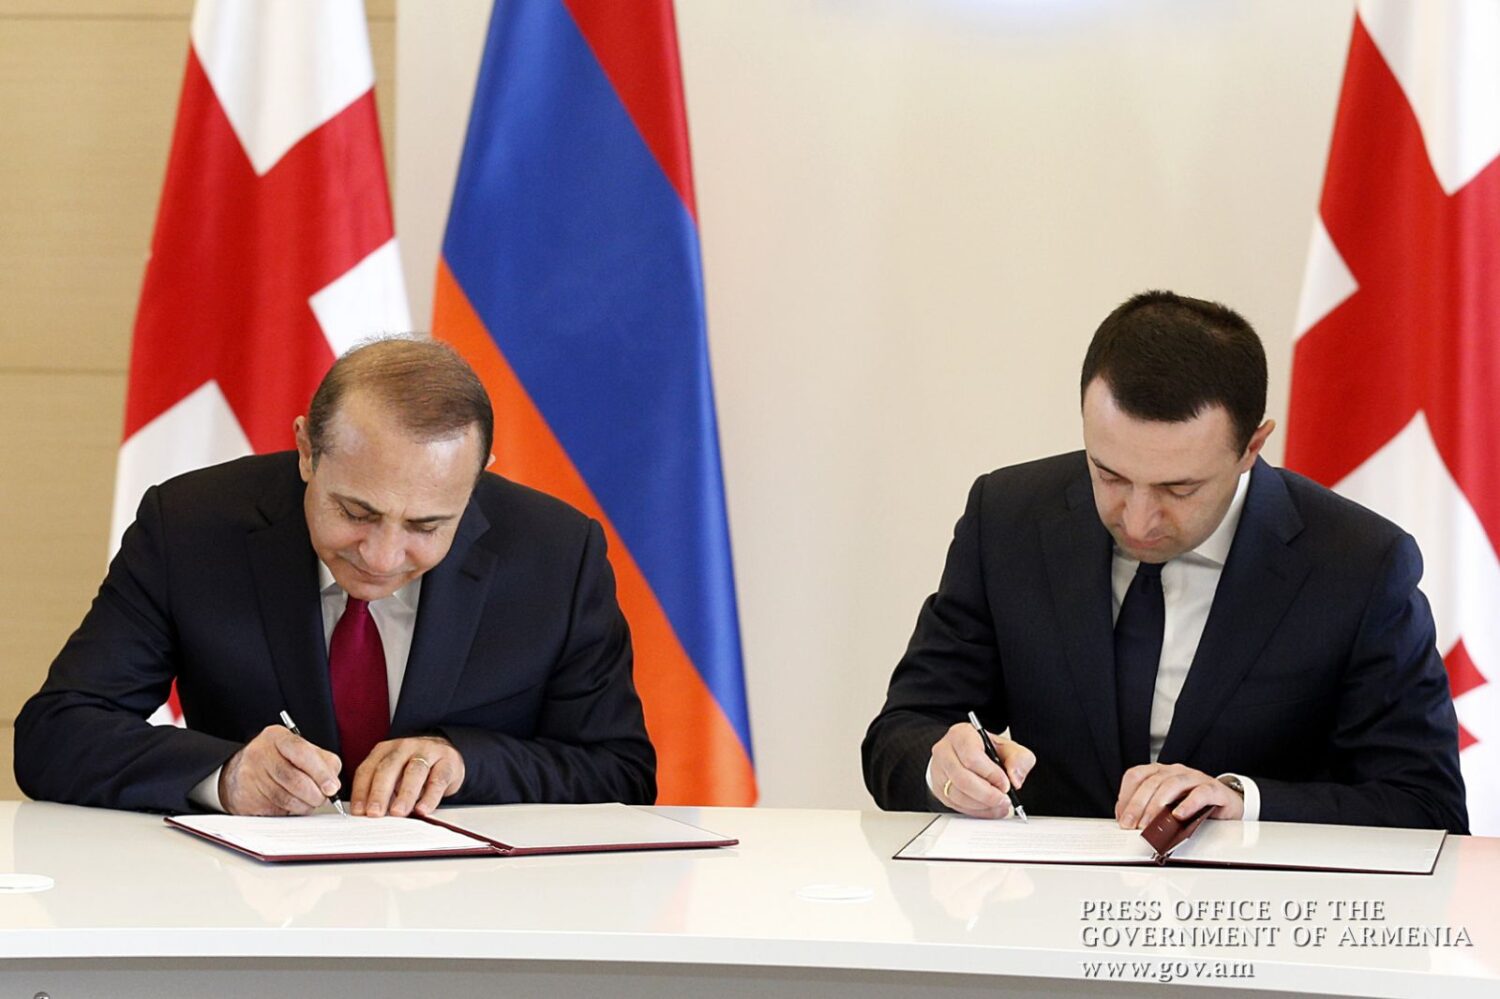 Հայաստանի և Վրաստանի վարչապետները նախաստորագրել են «Բարեկամության» կամուրջի կառուցման համաձայնագիրը